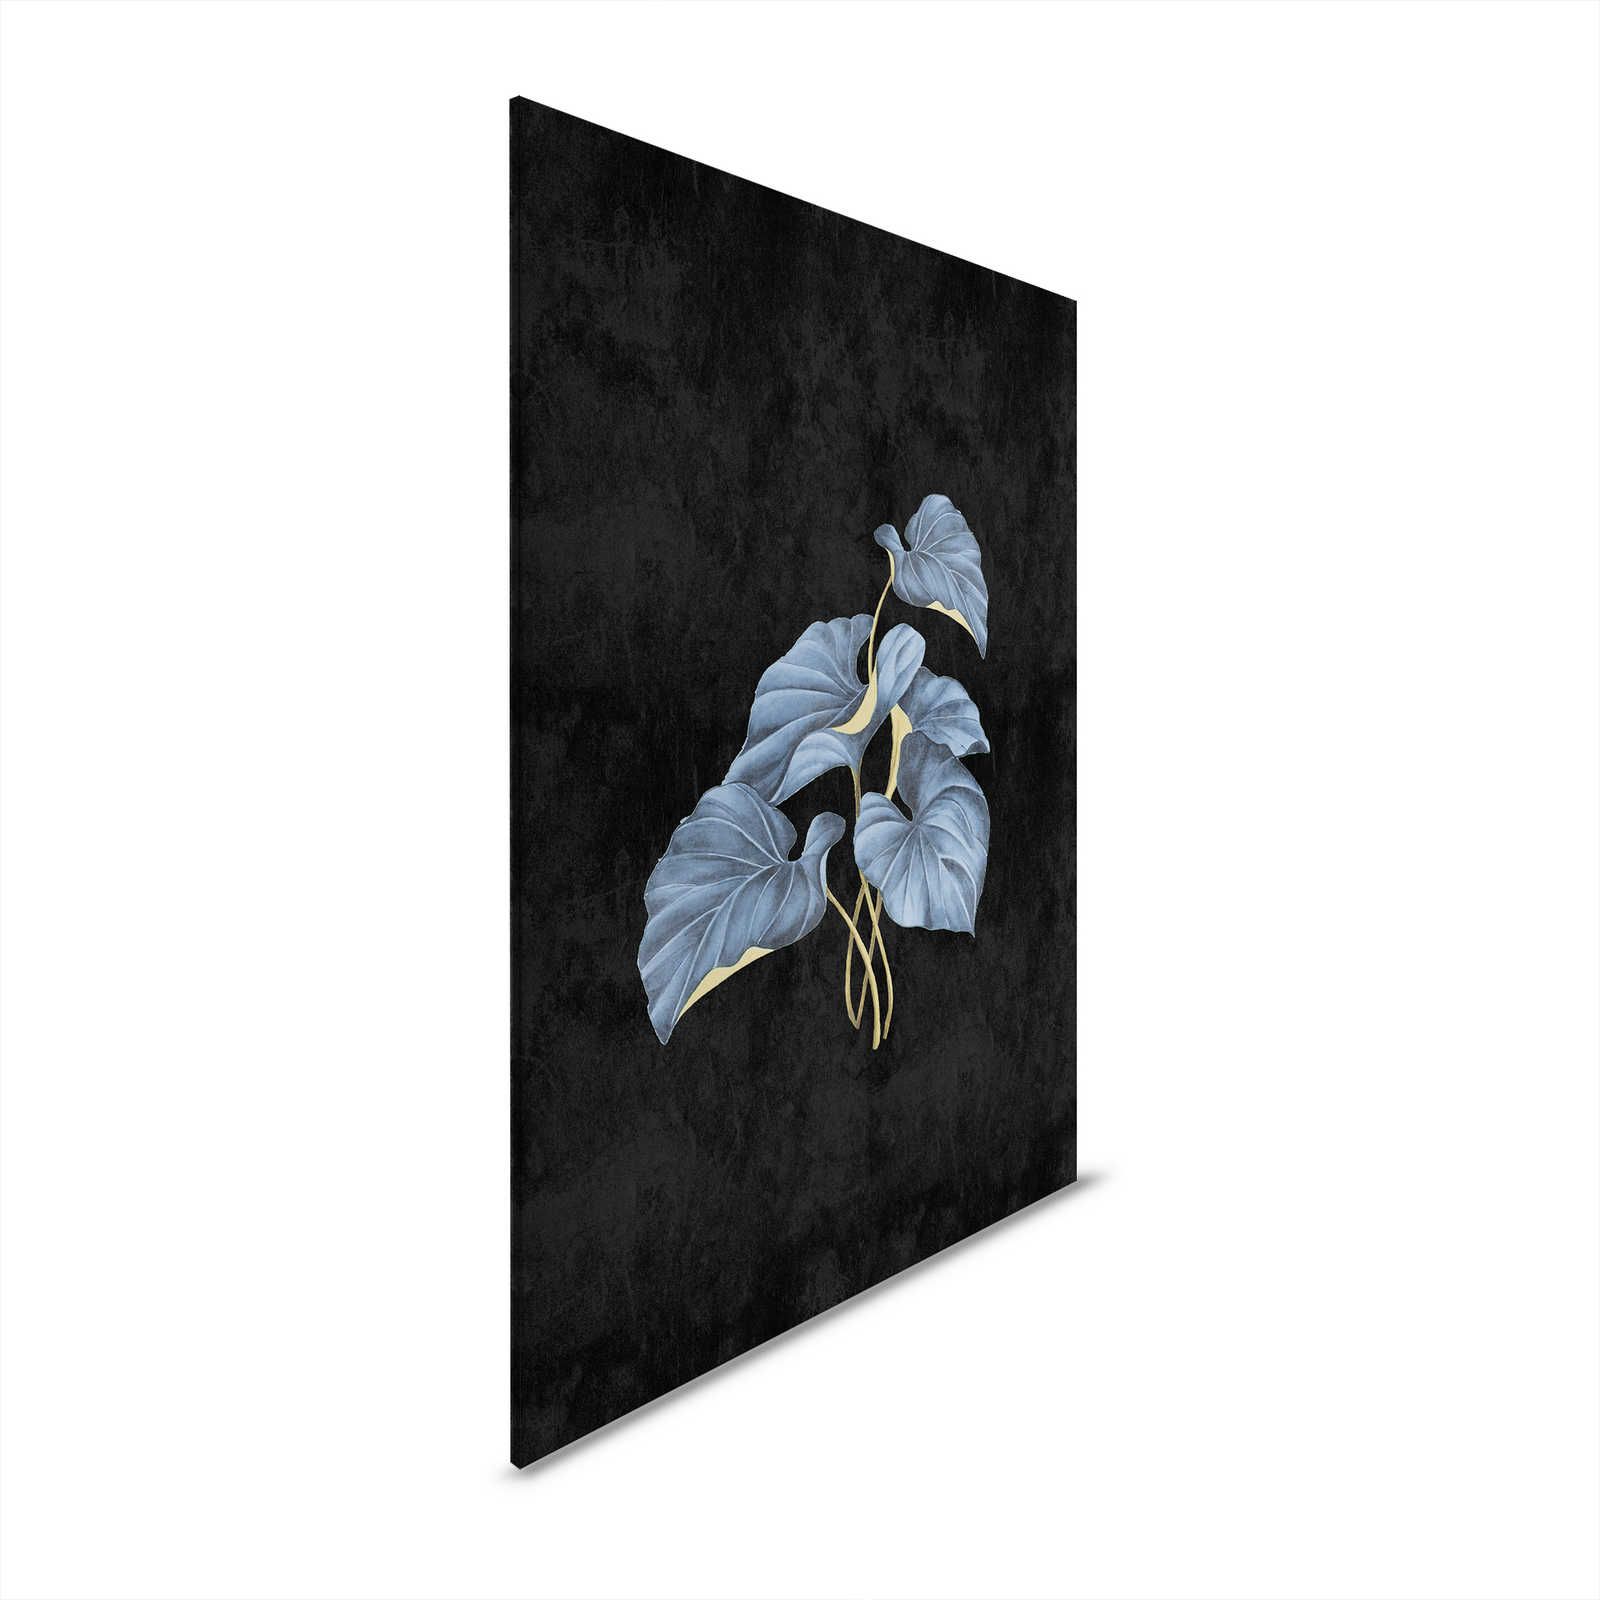         Fiji 1 - Schwarzes Leinwandbild Blaue Blätter mit Gold Akzent – 0,60 m x 0,90 m
    